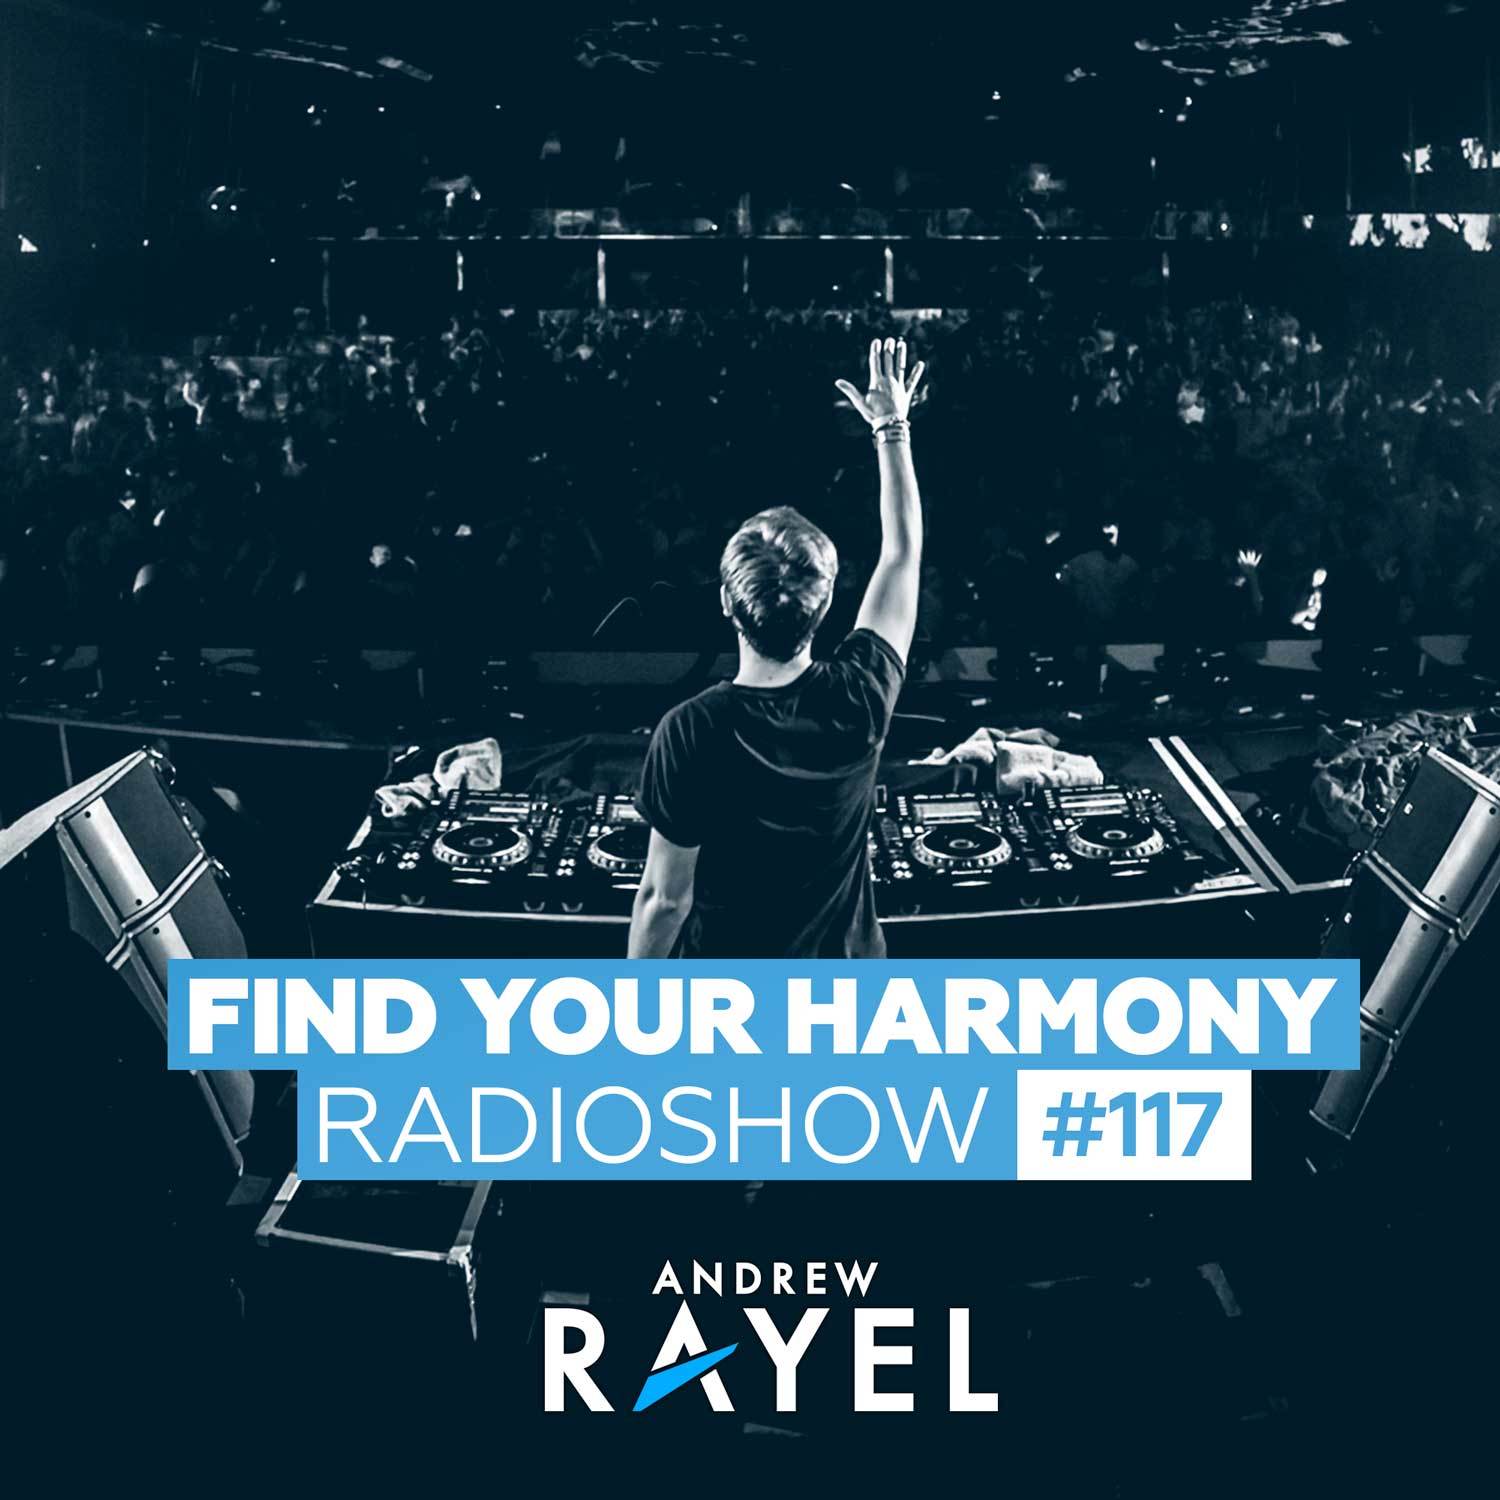 Find Your Harmony Radioshow #117